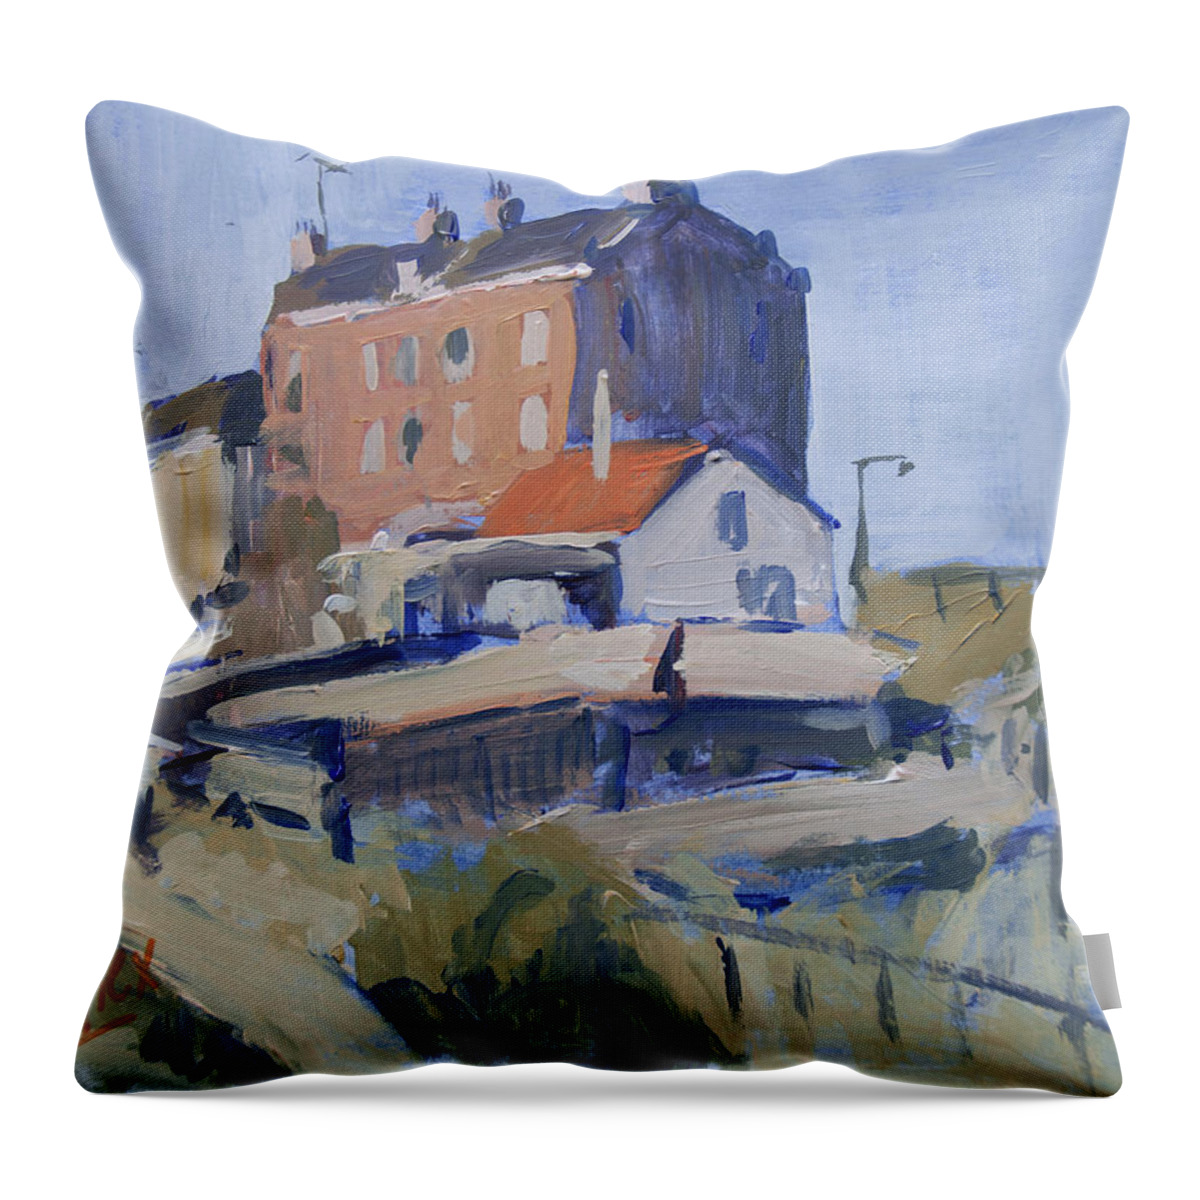 Backyard Throw Pillow featuring the painting Backyard Spaarndammerdijk by Nop Briex